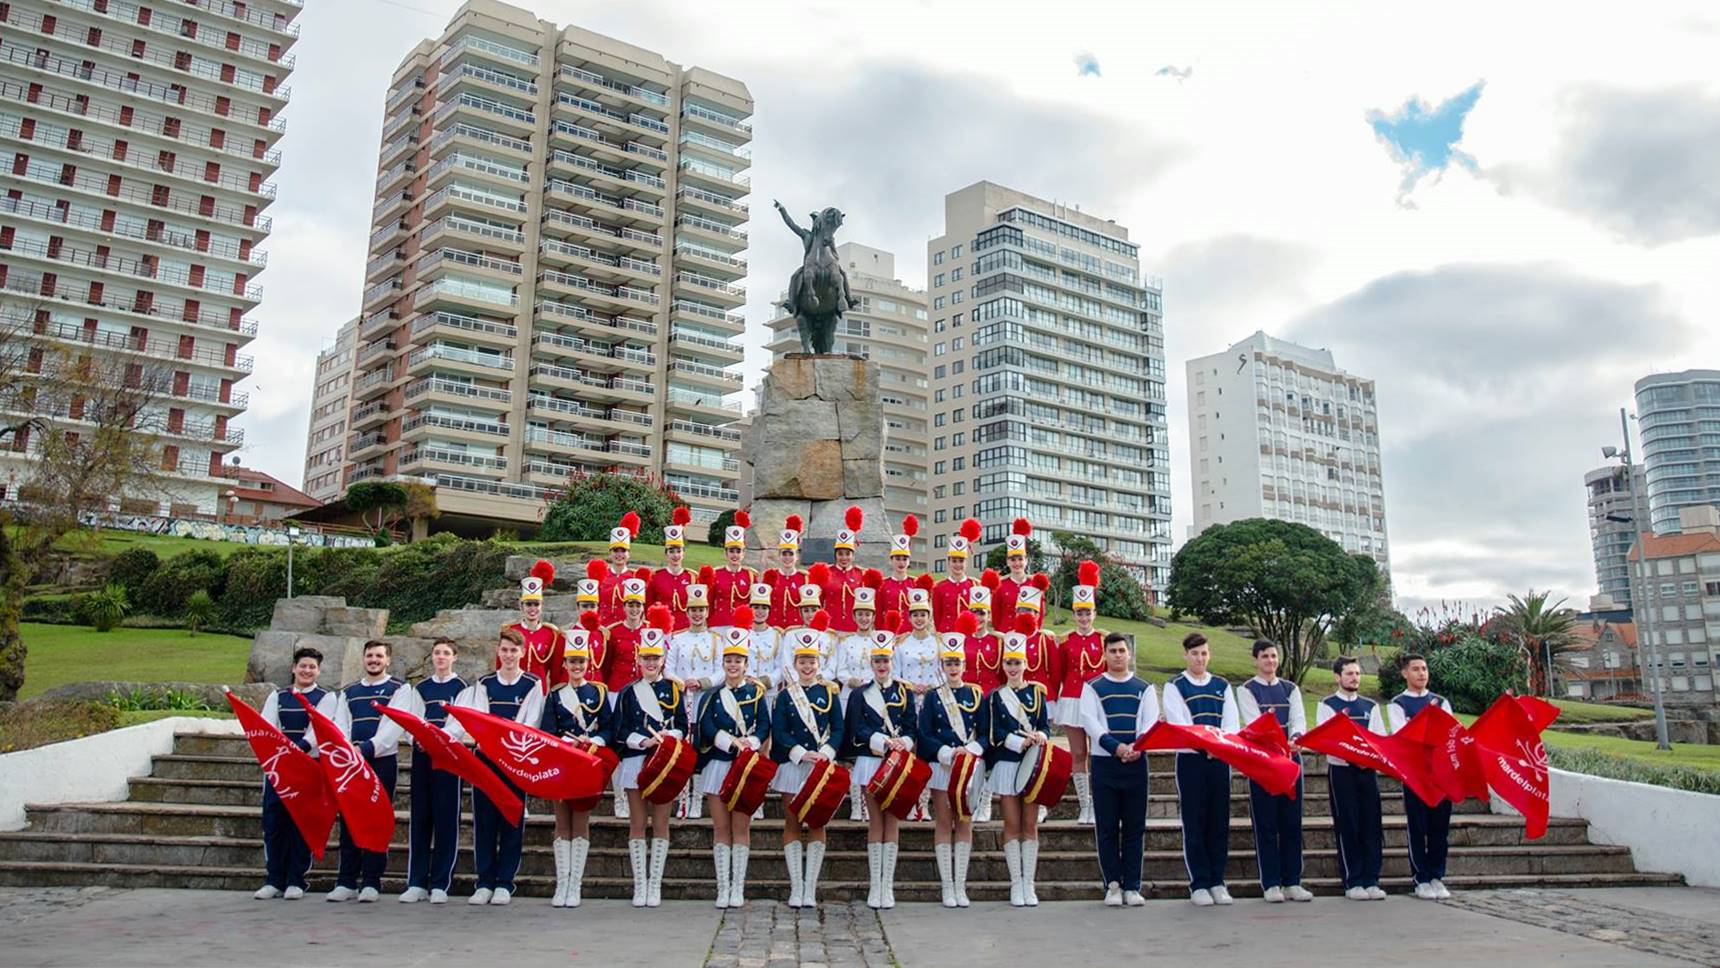 Fin de semana largo en Mar del Plata: presentaciones de la Guardia Nacional del Mar